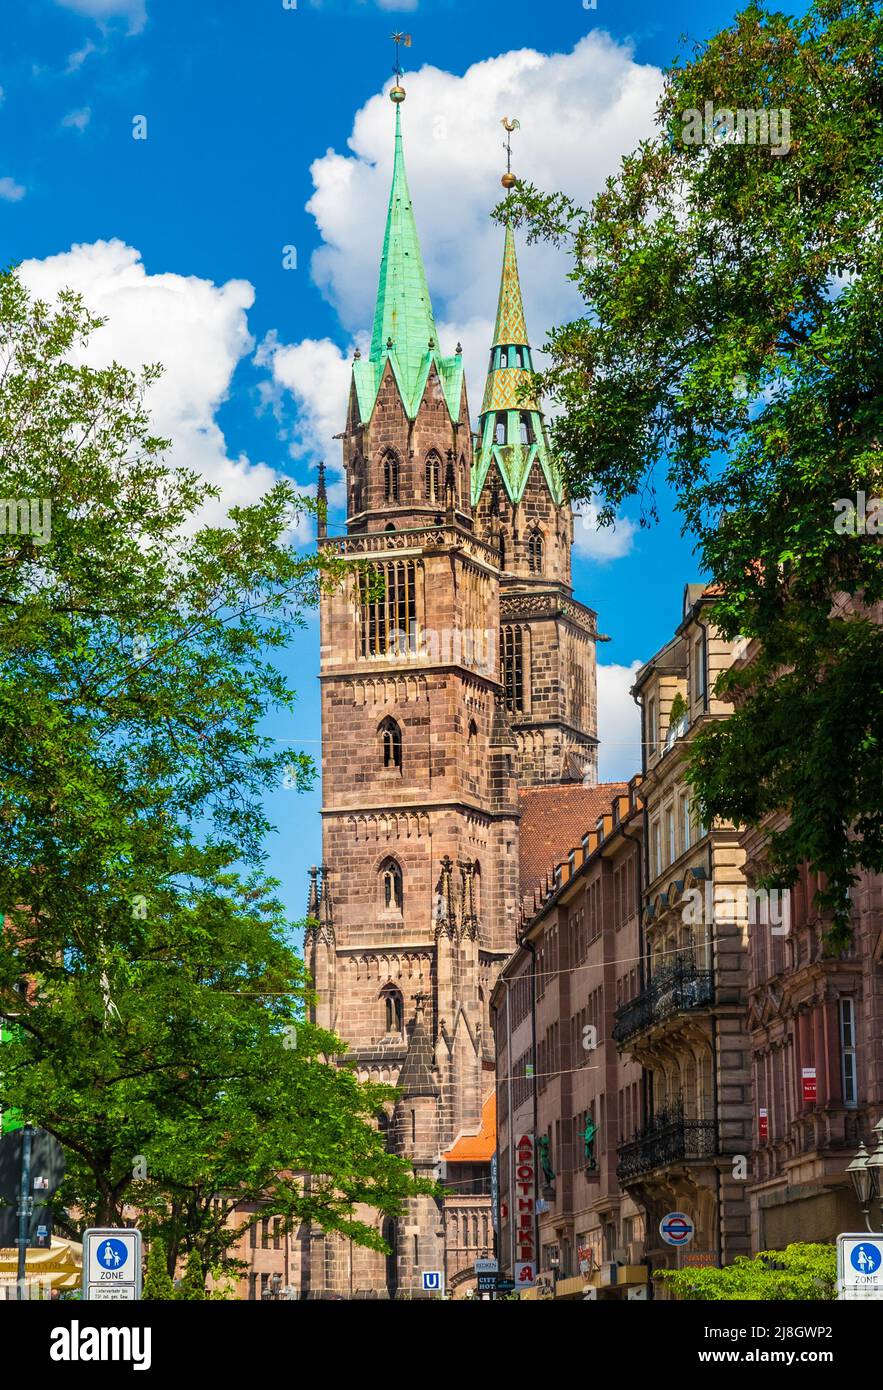 Herrliche Aussicht auf die Straße mit den prominenten zwei Türmen des berühmten St. Lawrence (St. Lorenz), eine mittelalterliche Kirche in Nürnberg, Deutschland, an einem sonnigen... Stockfoto